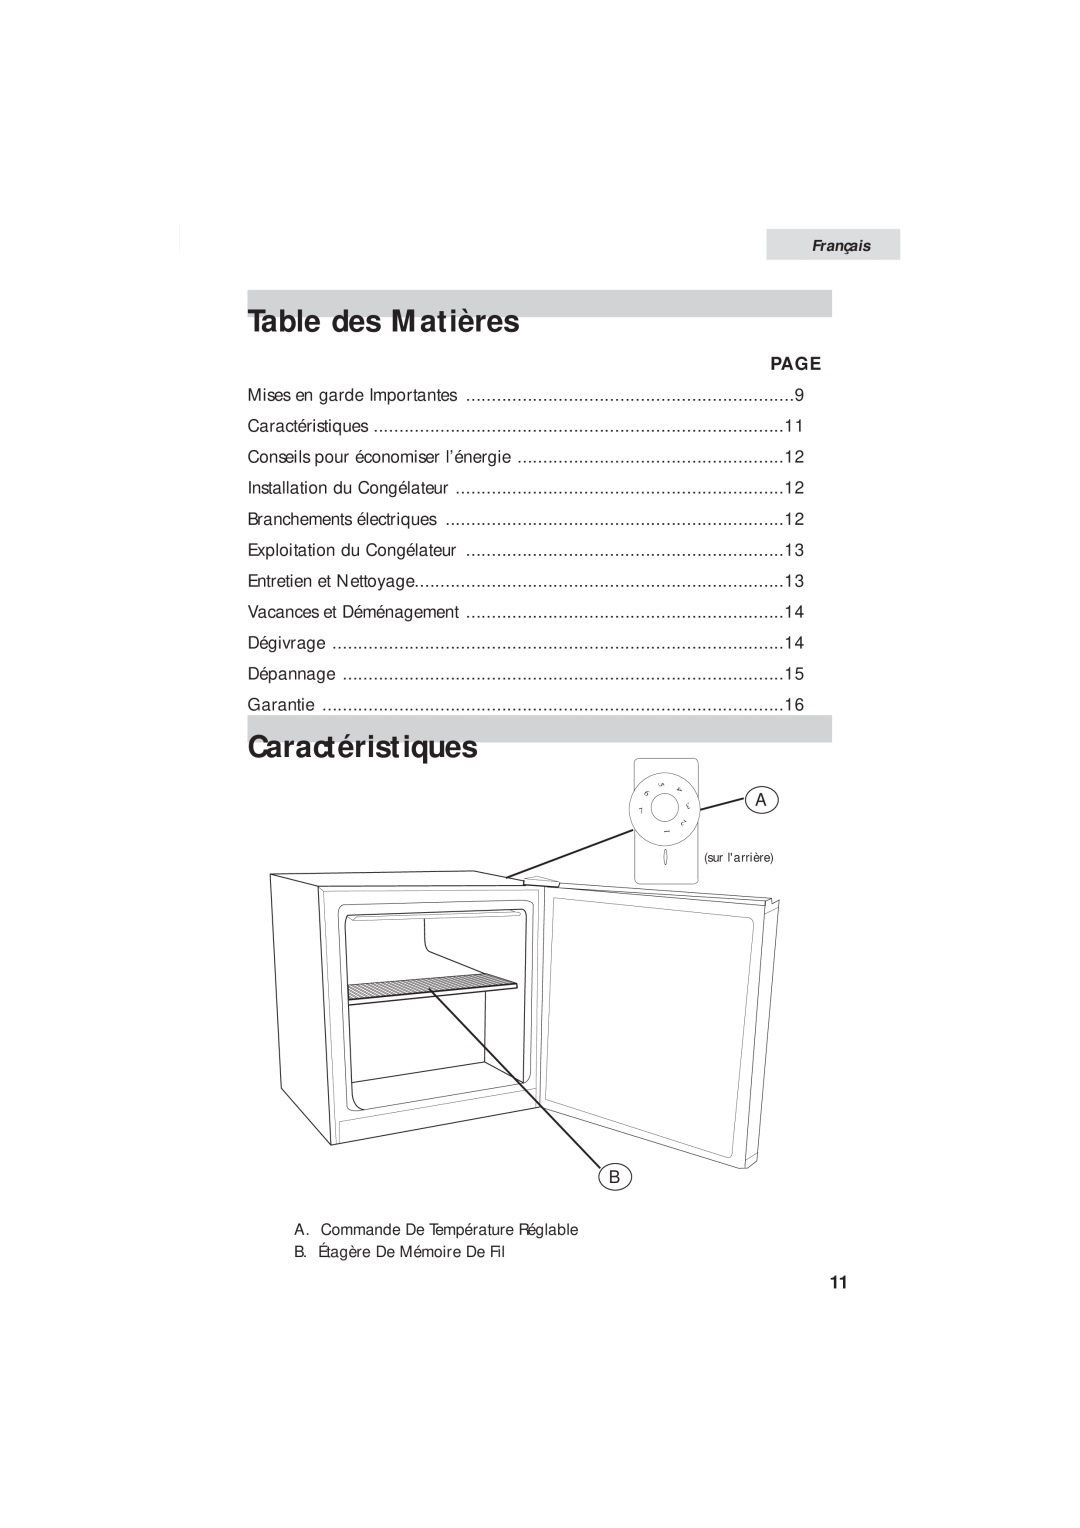 Haier HUM013EA user manual Table des Matières, Caractéristiques, Français, Page 